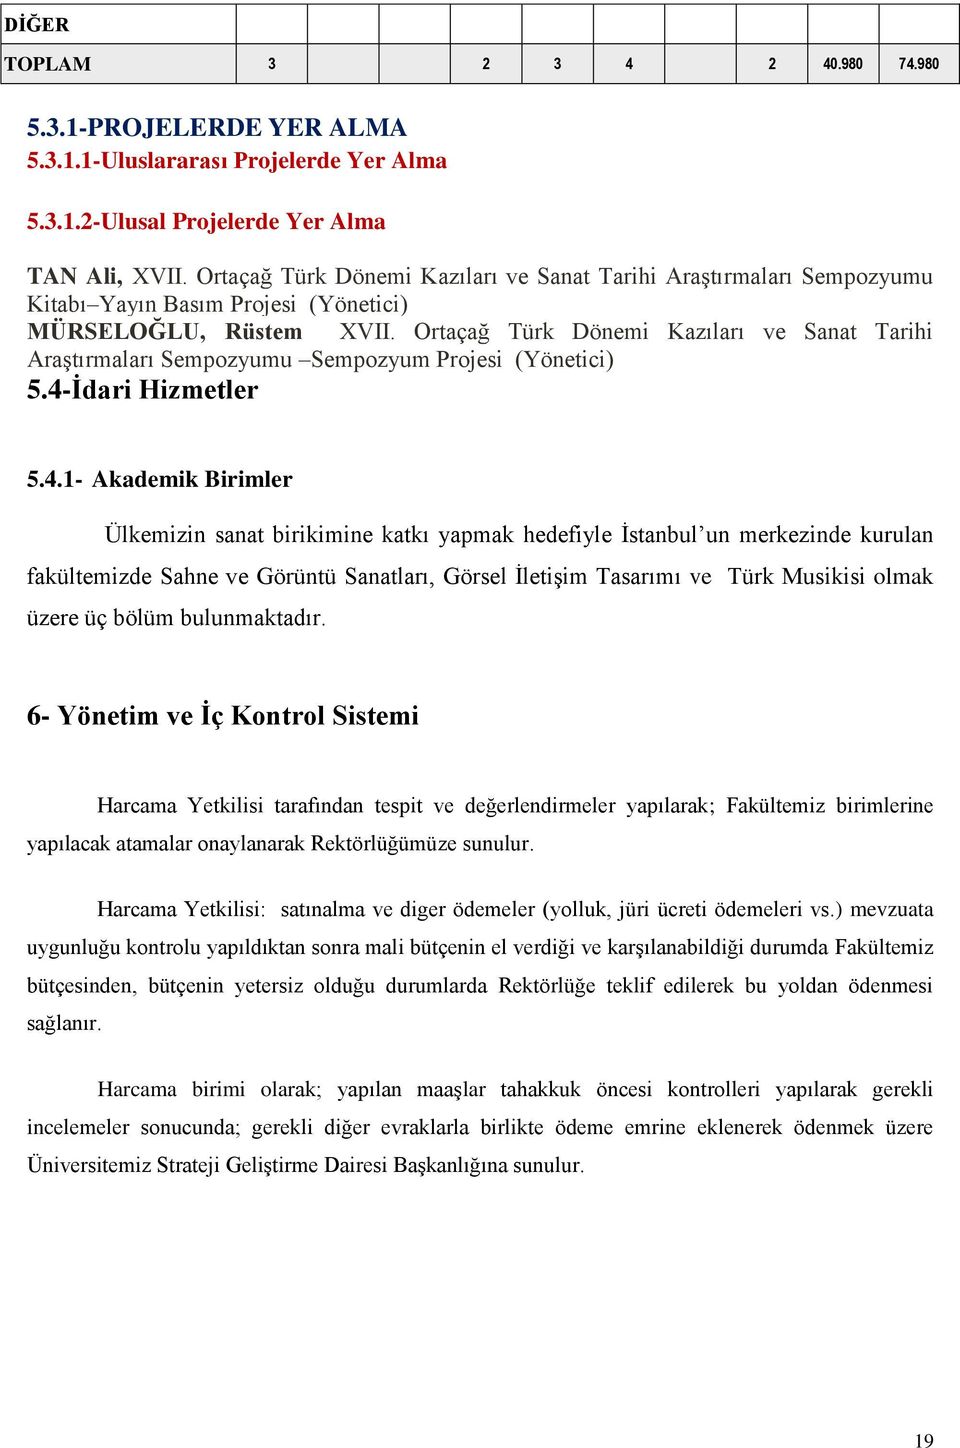 Ortaçağ Türk Dönemi Kazıları ve Sanat Tarihi Araştırmaları Sempozyumu Sempozyum Projesi (Yönetici) 5.4-